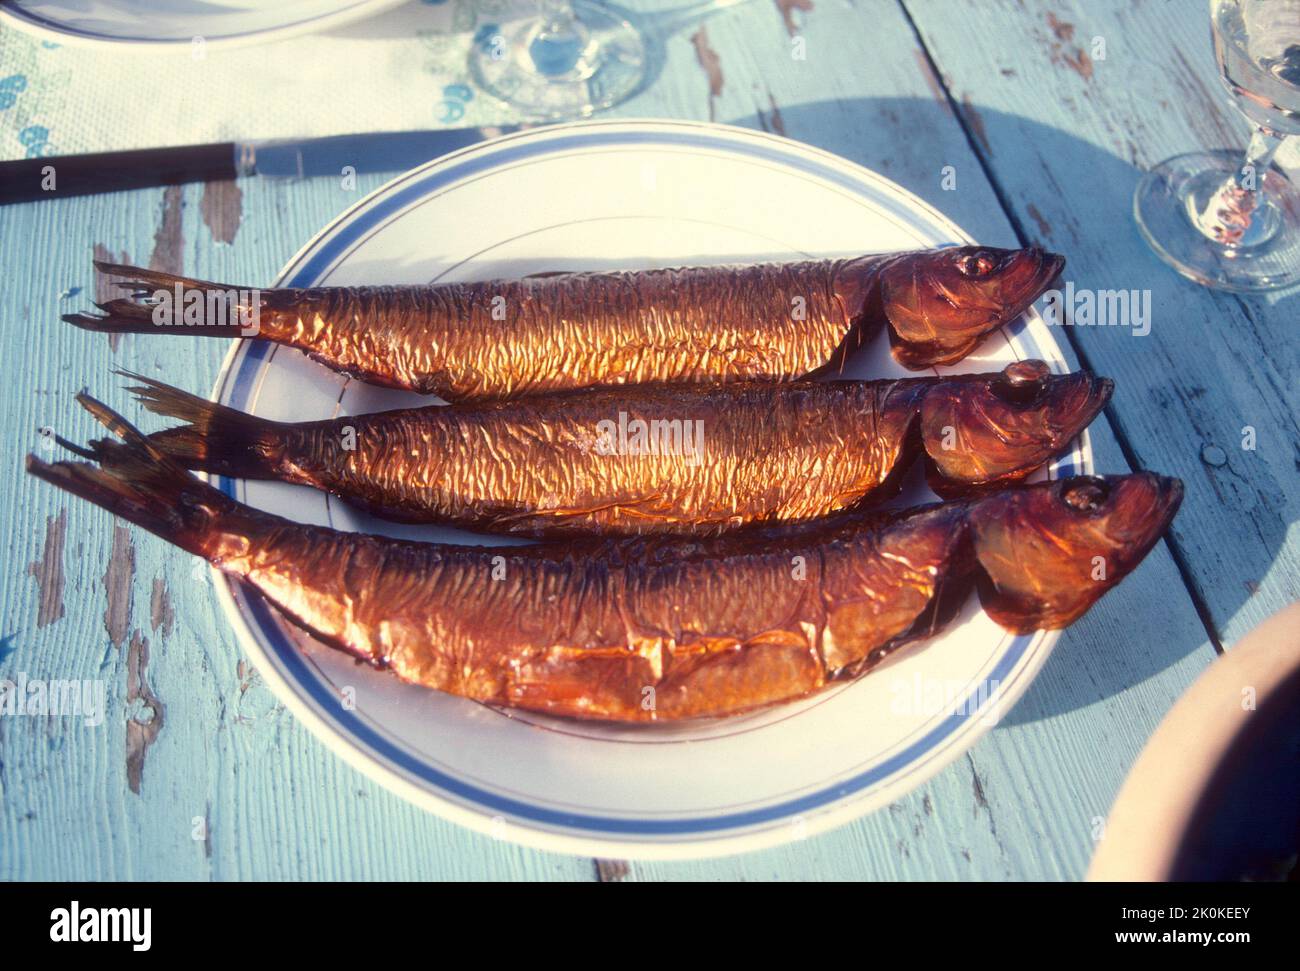 DINAMARCA Bornholm pescado ahumado directamente desde el humo a los platos de almuerzo de los turistas Foto de stock